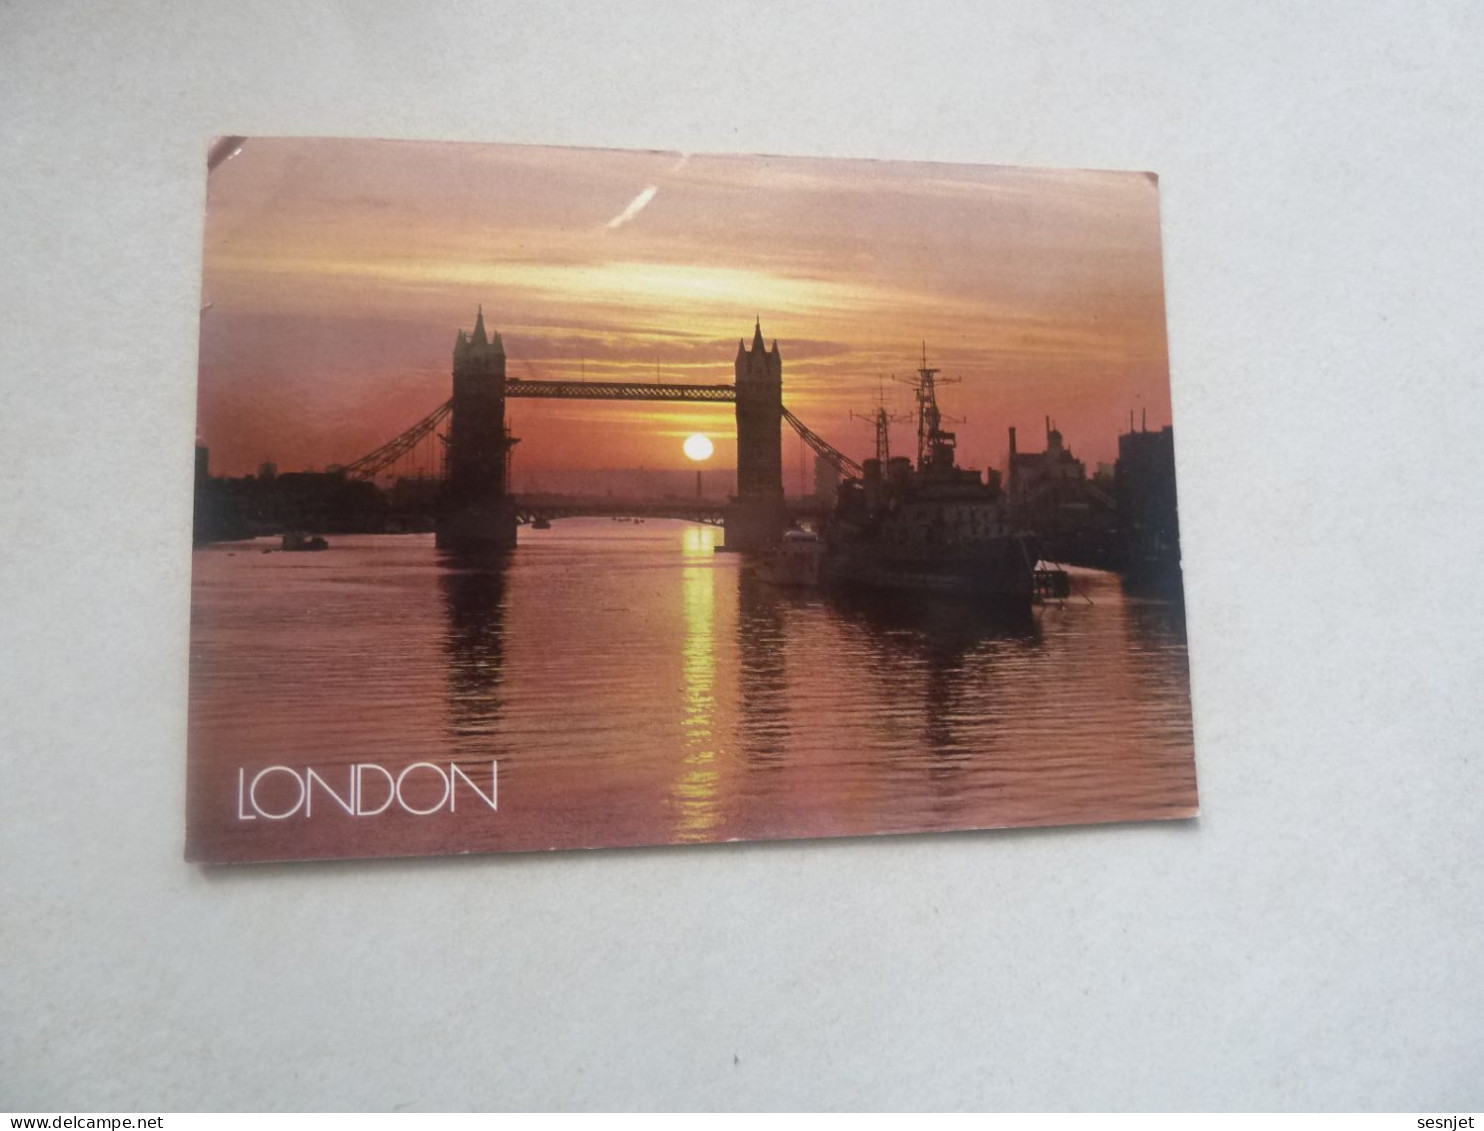 London - Carte Postale De L'Amitié - L-85 - Editions Fisa - Golden Shield - Année Non Définie - - Tower Of London